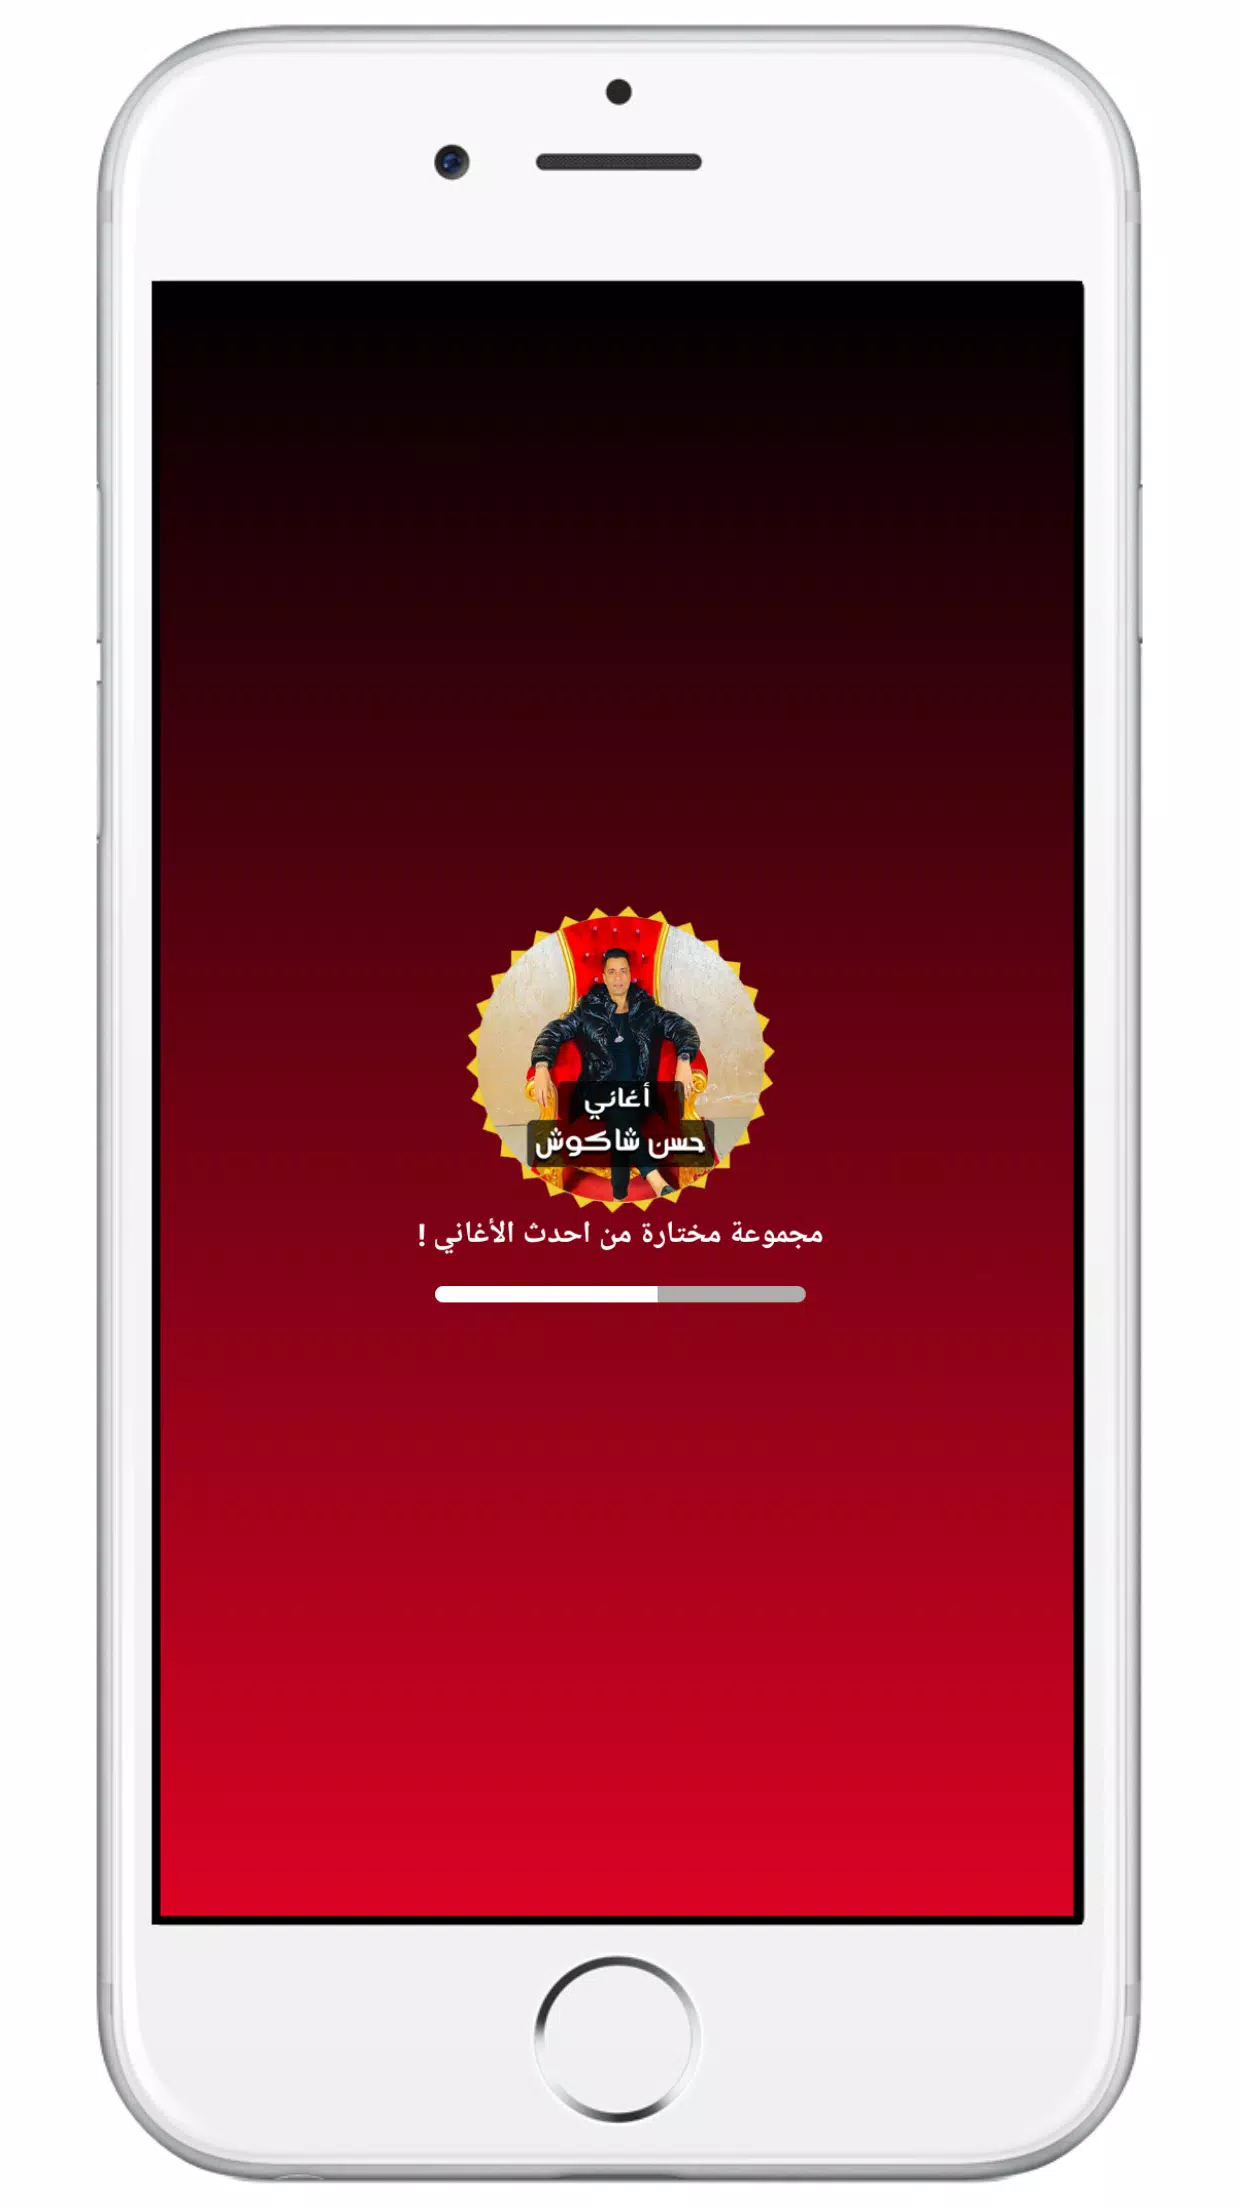 اغاني حسن شاكوش for Android - APK Download